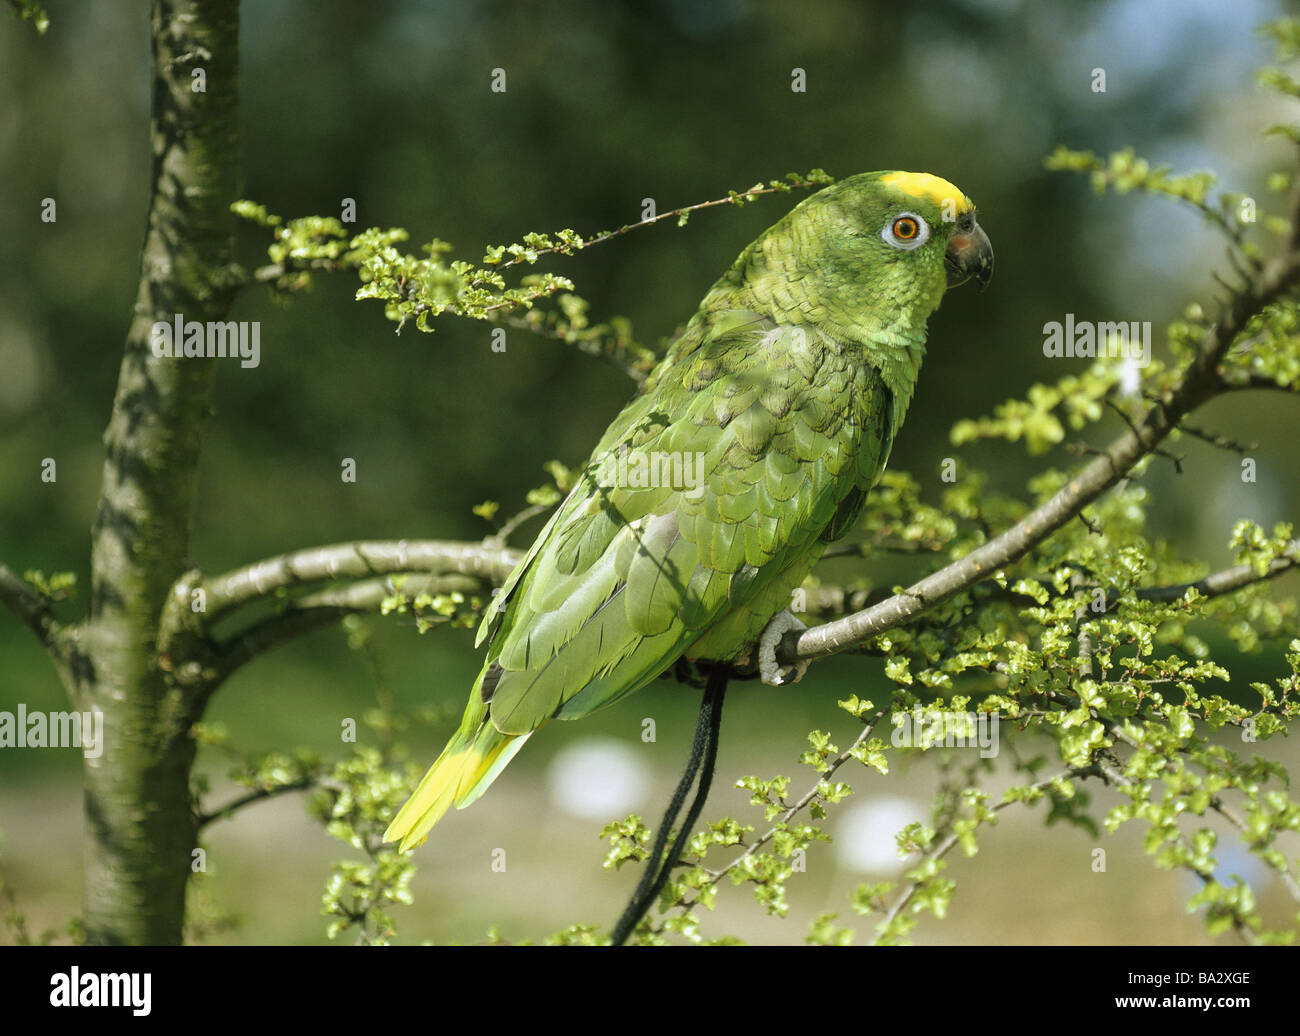 Strauch gelb-Kopf-Amazon Amazona Ochrocephala Belizensis Wildlife Tiere  Vogel Papagei Amazon Gefieder grün gelb exotische Stockfotografie - Alamy